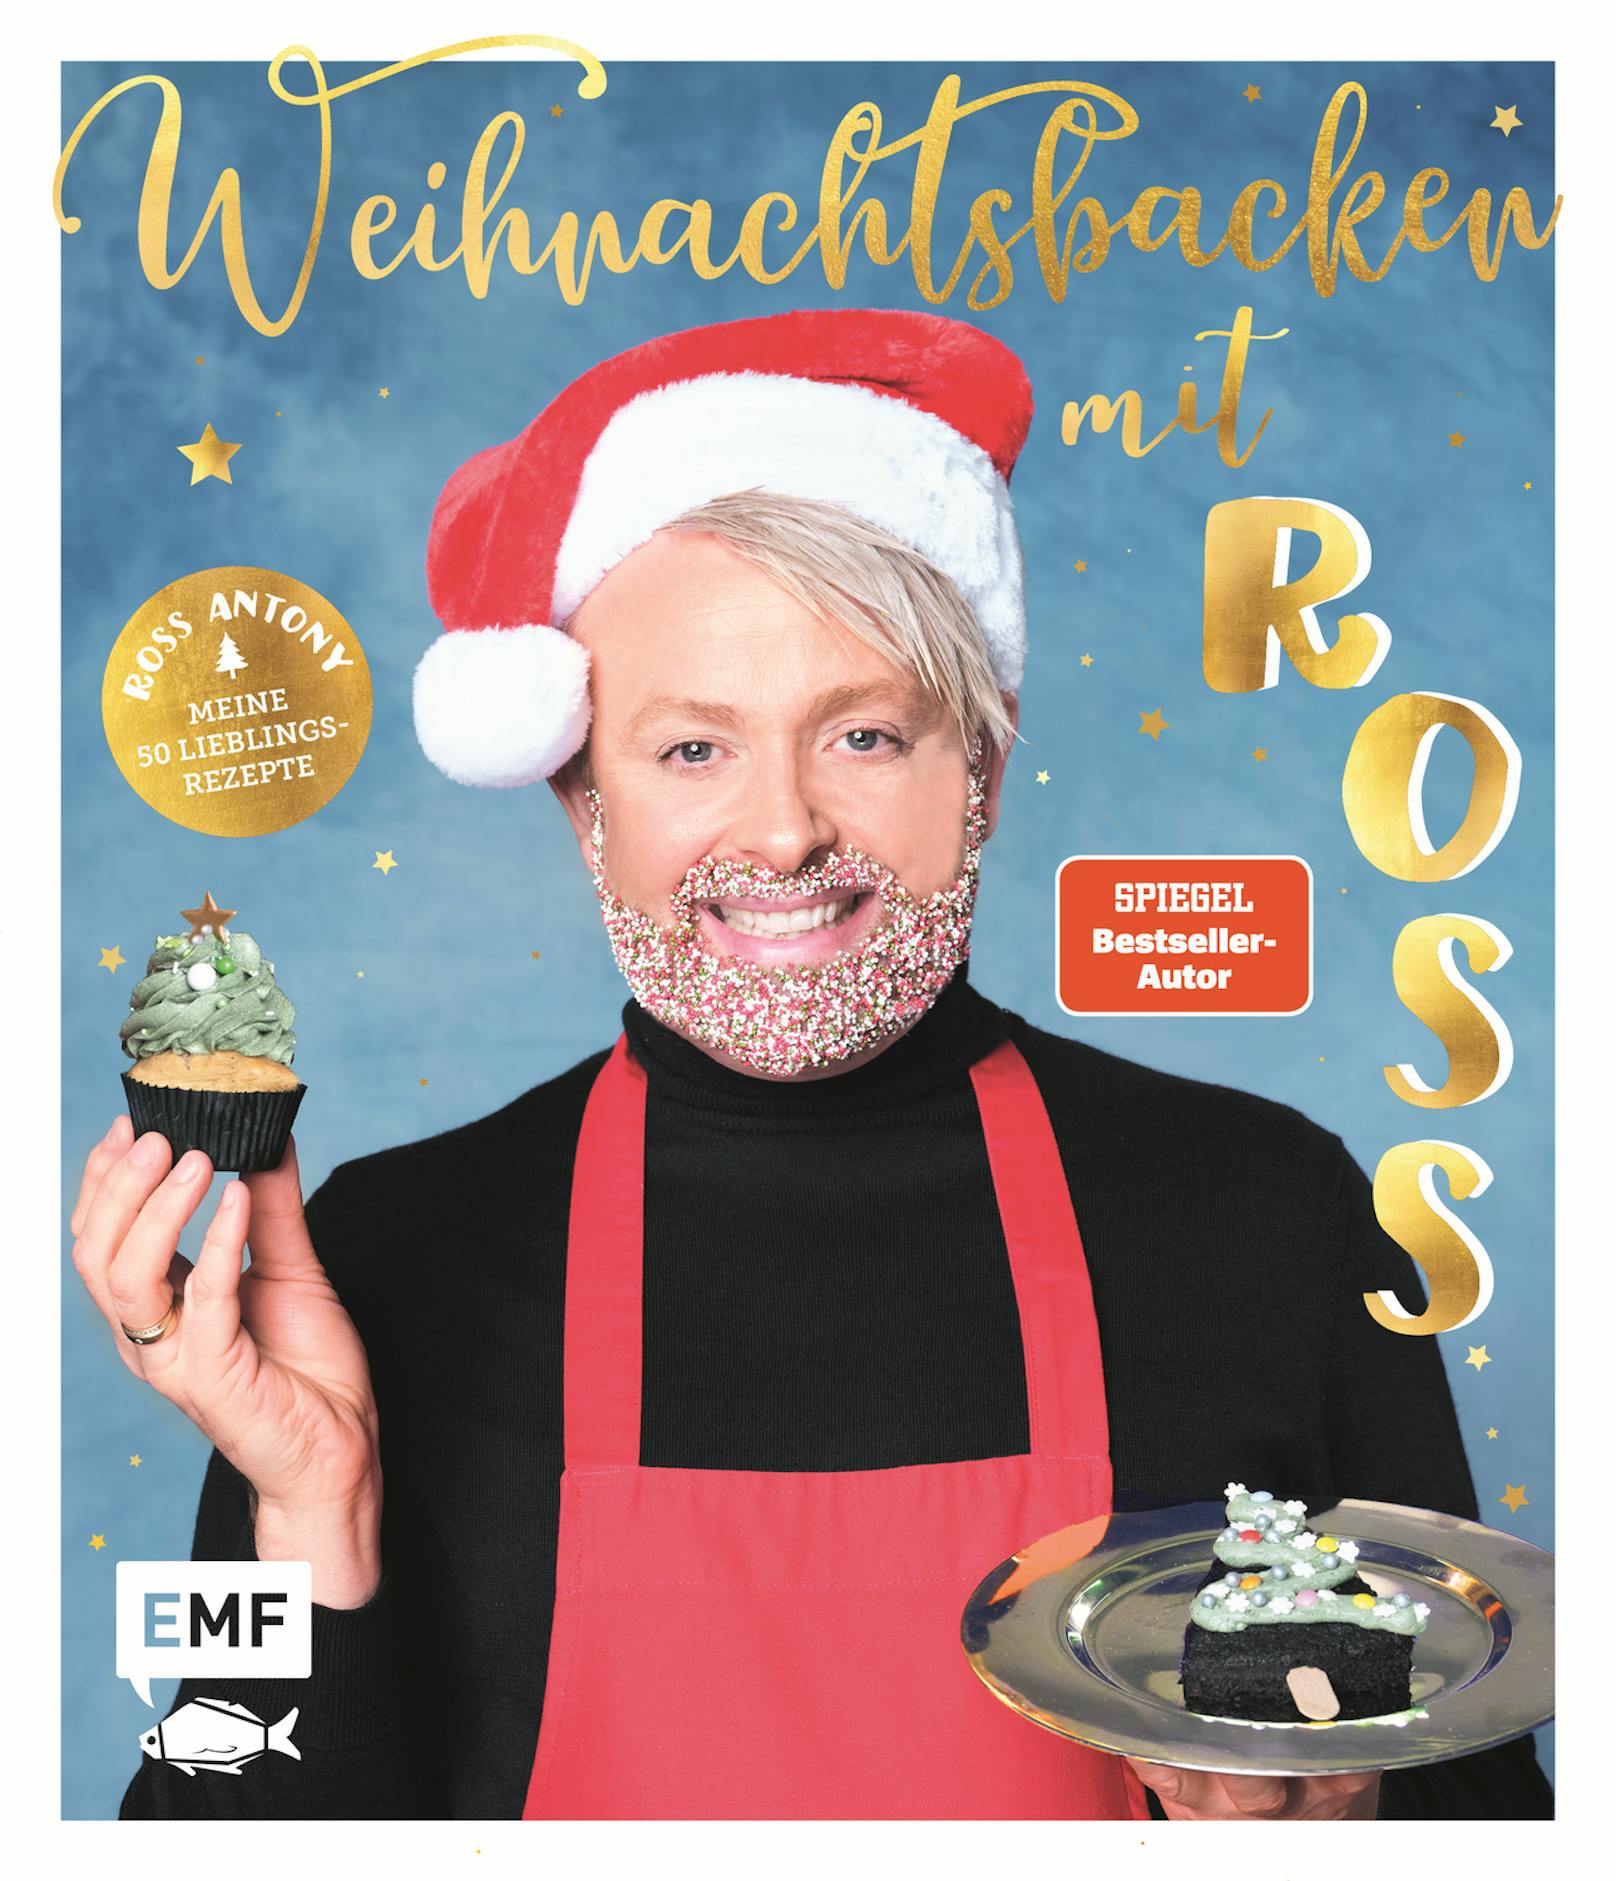 Das Buch "Weihnachtsbacken mit Ross" ist im EMF-Verlag erschienen und in jedem gut sortierten Buchhandel erhältlich.<a href="https://www.heute.at/g/ross-antony-verraet-heute-sein-liebstes-weihnachtsrezept-100179004?category=/szene/schlager&amp;image=2#carousel_100179004"></a>